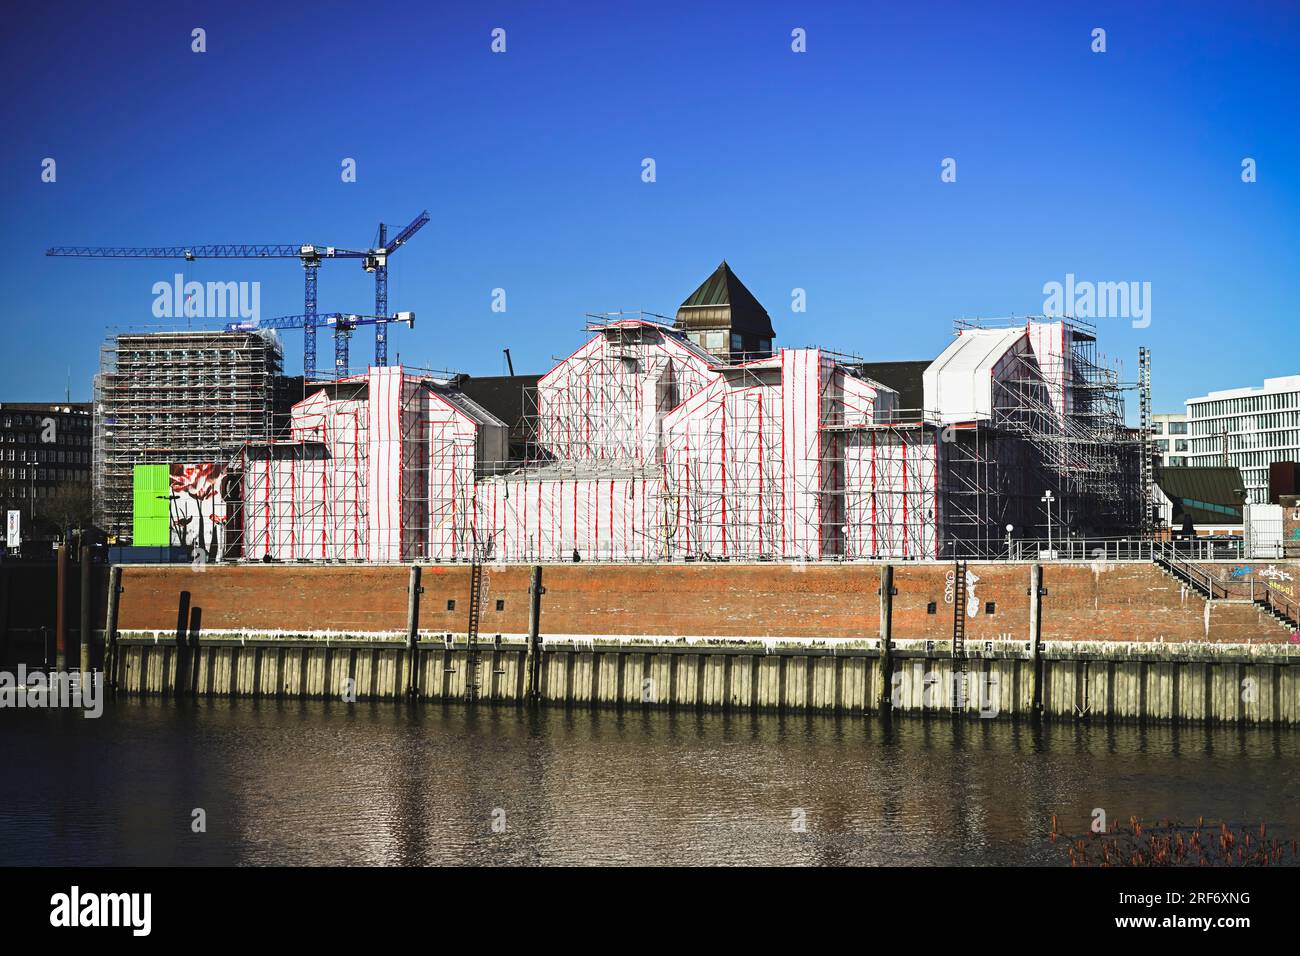 Zu Bauarbeiten verhüllte Deichtorhallen in der Altstadt von Hamburg, Deutschland Foto Stock